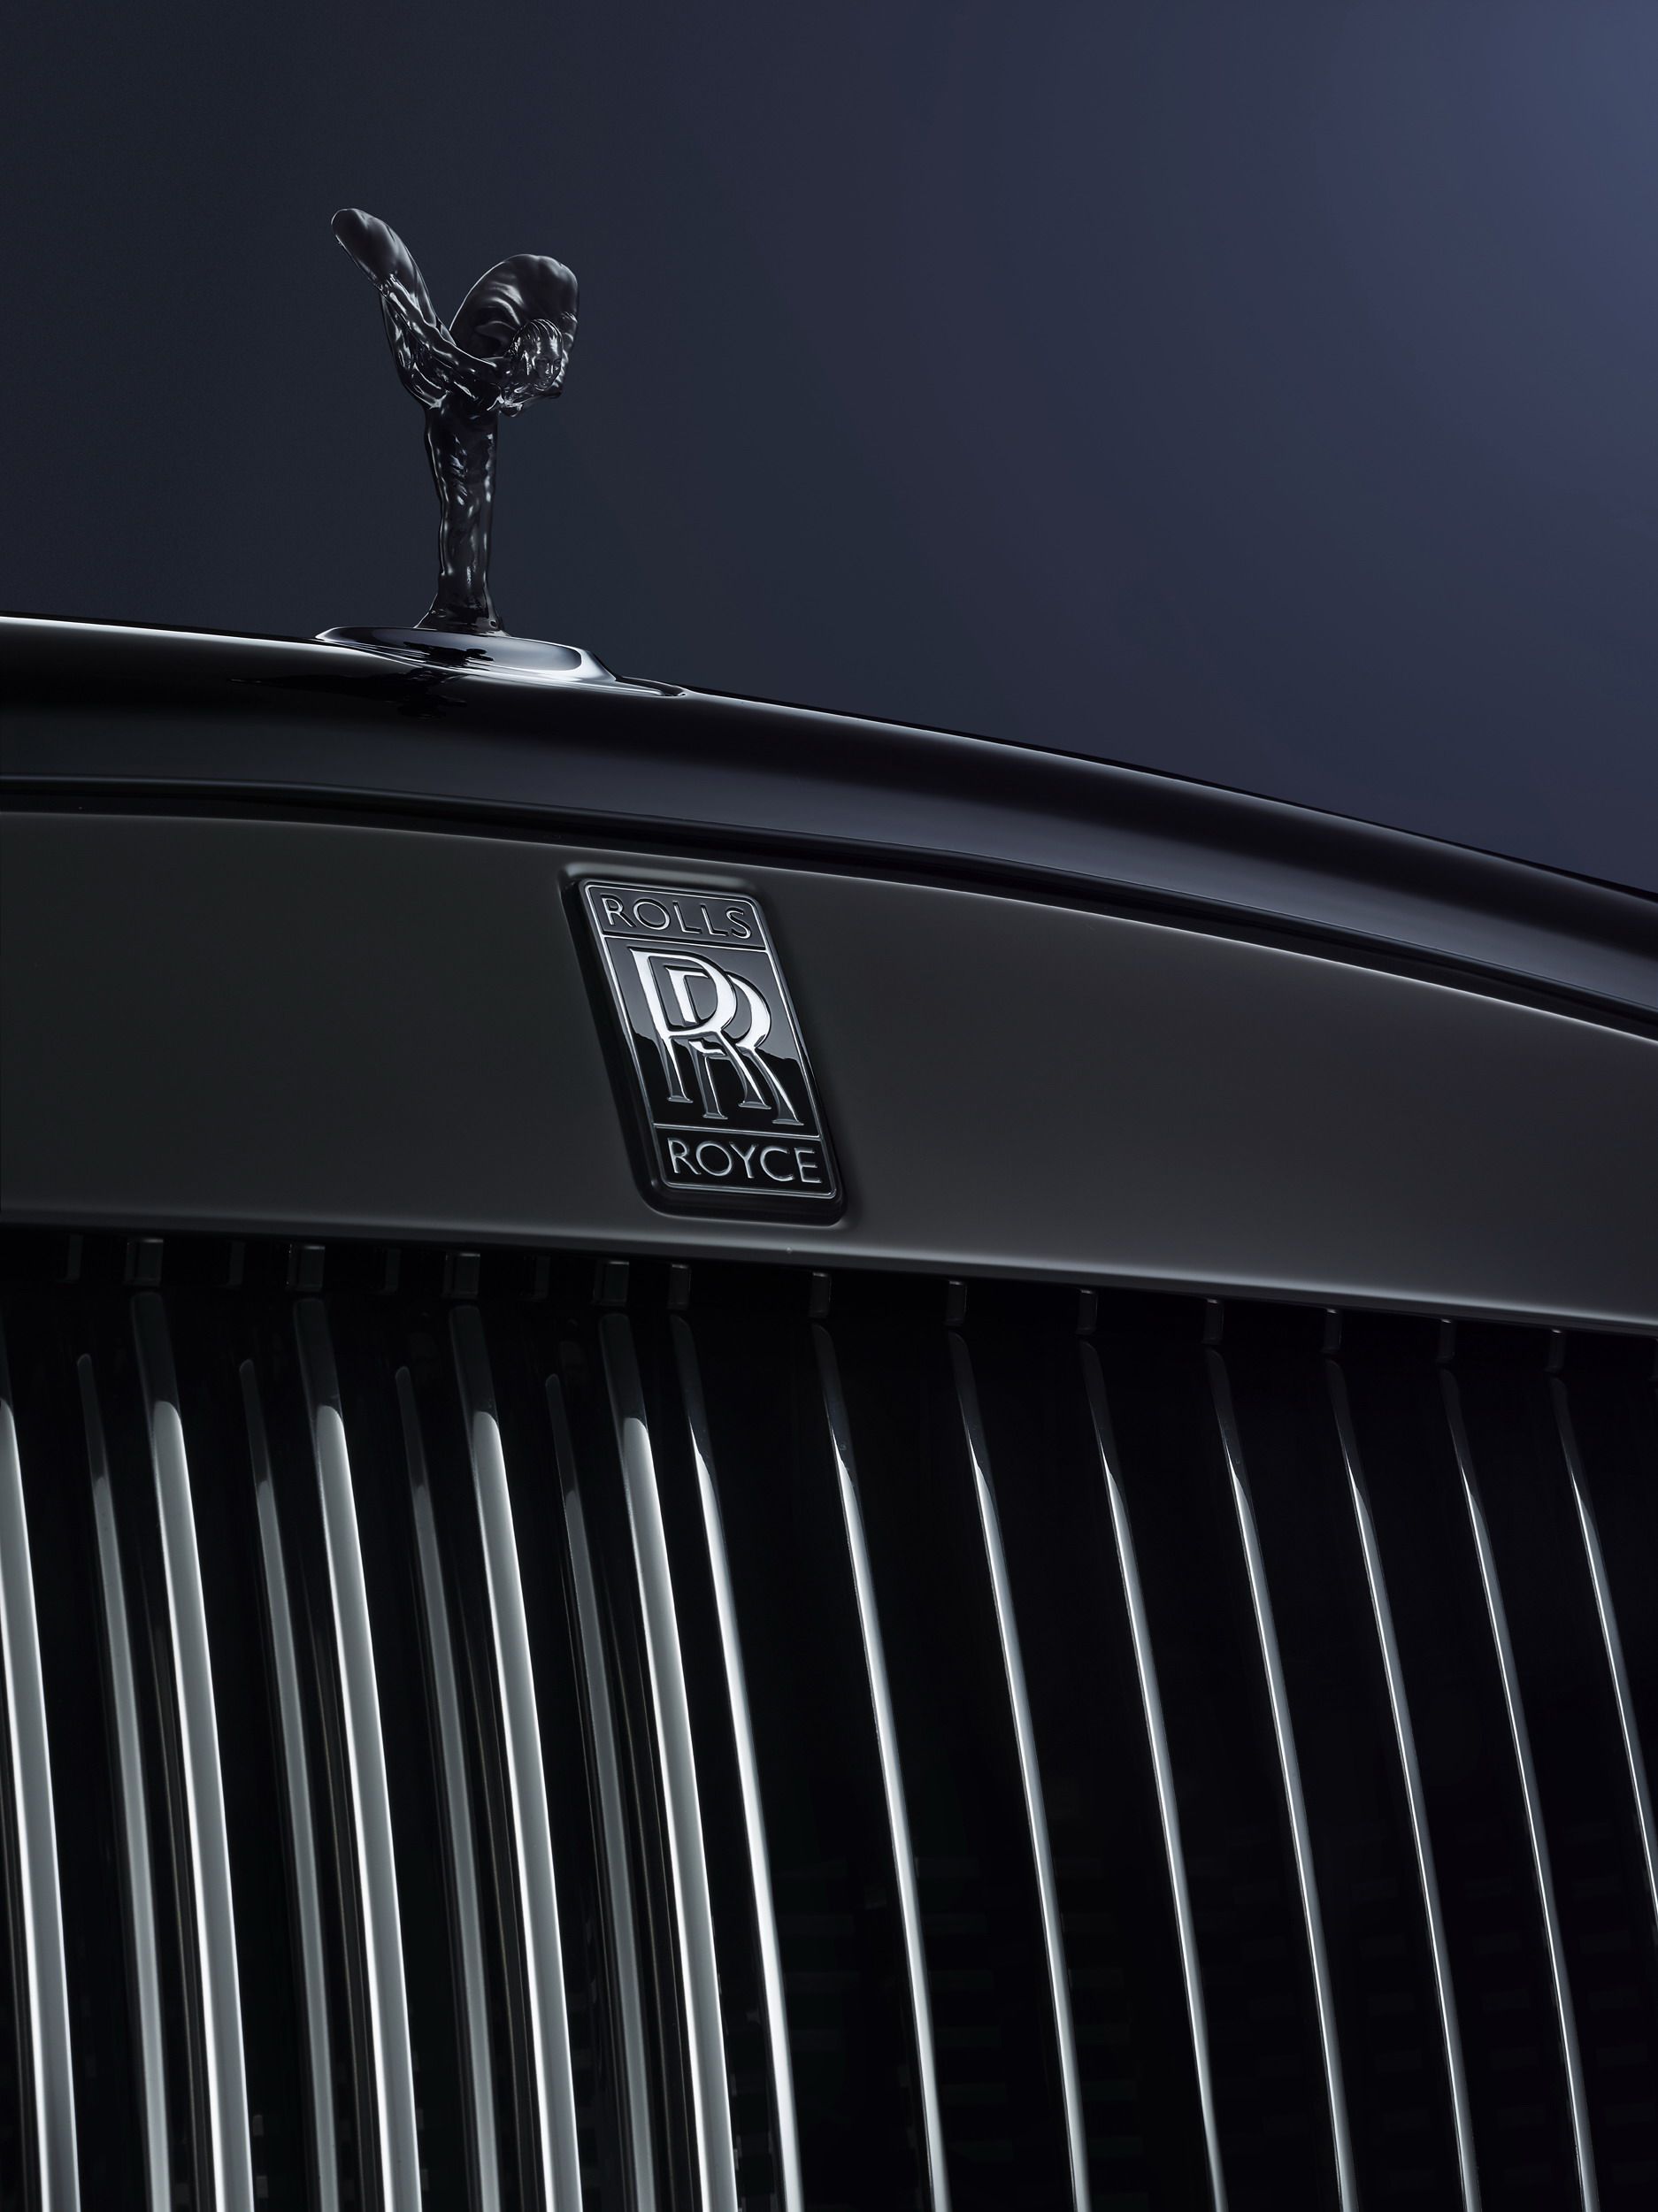 2016 Rolls Royce Ghost Black Badge